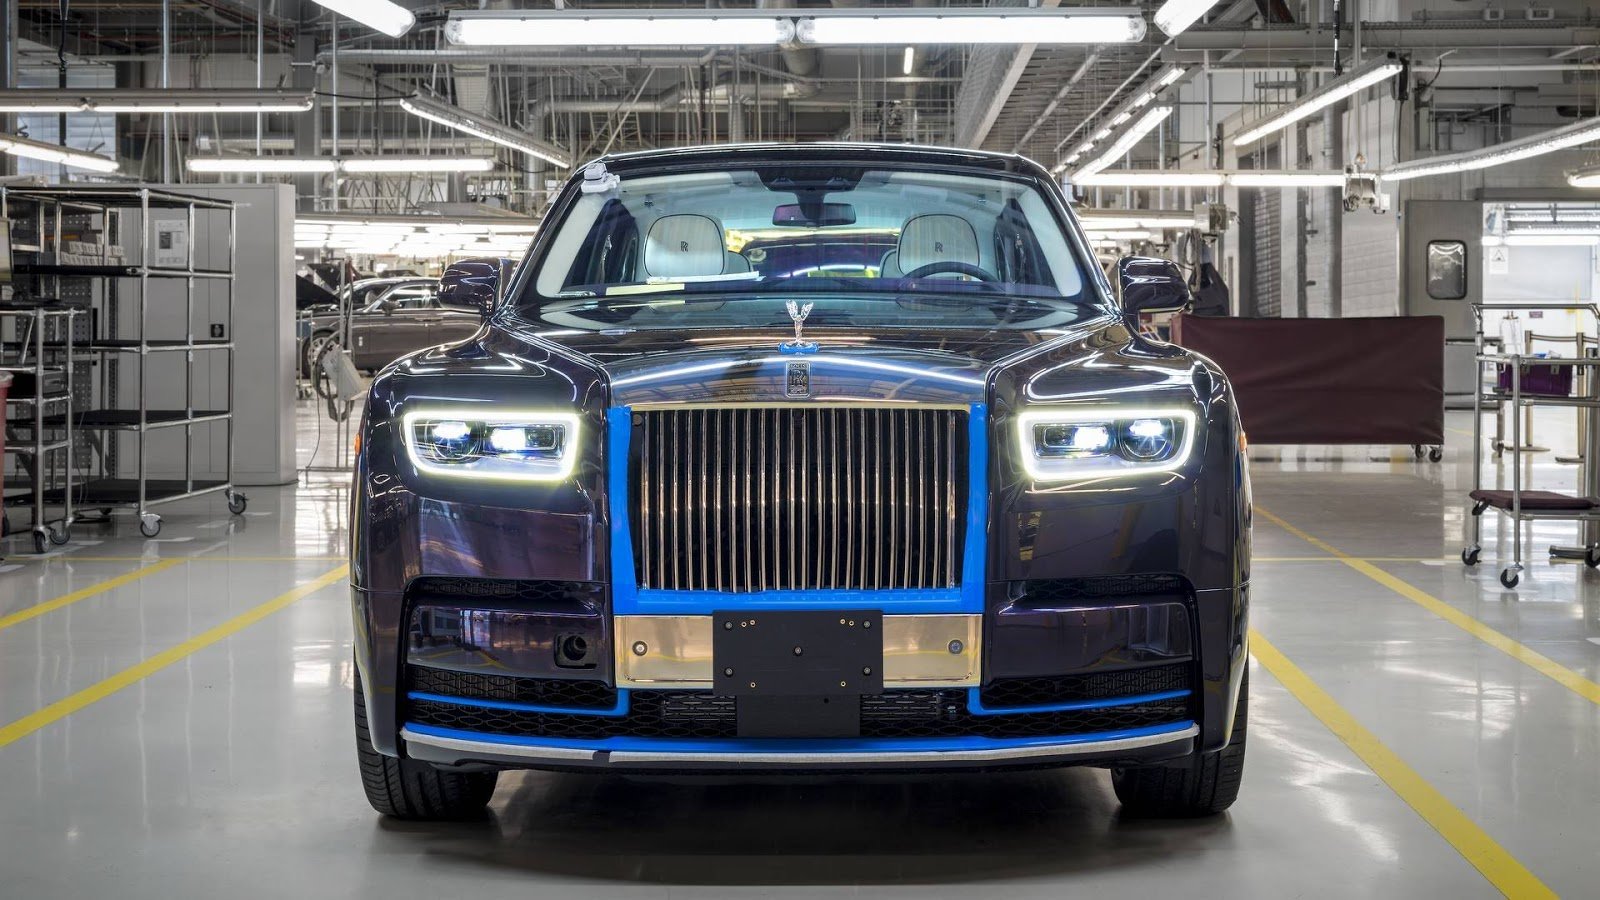 První vyrobený Rolls-Royce Phantom nové generace